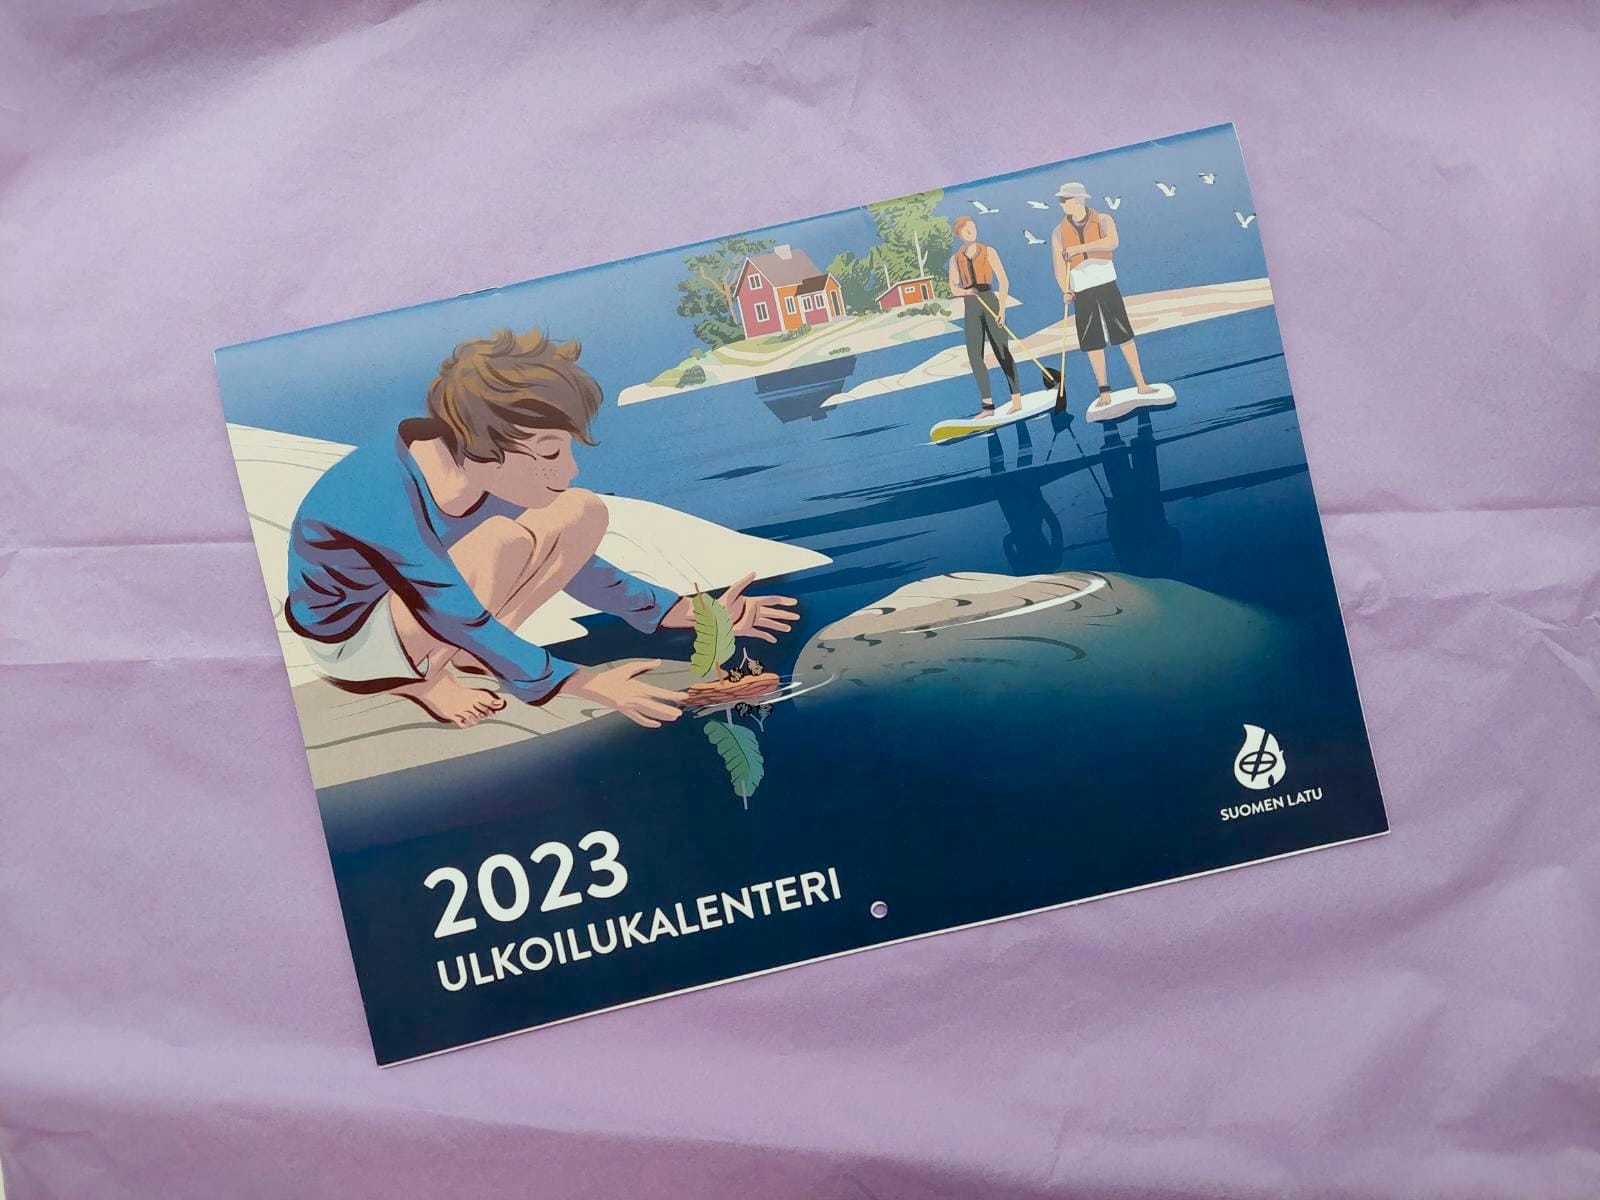 Suomen Latu 2023 kalenteri - Ulkoiluaktiviteetit kuvitettuna - Napa Agency